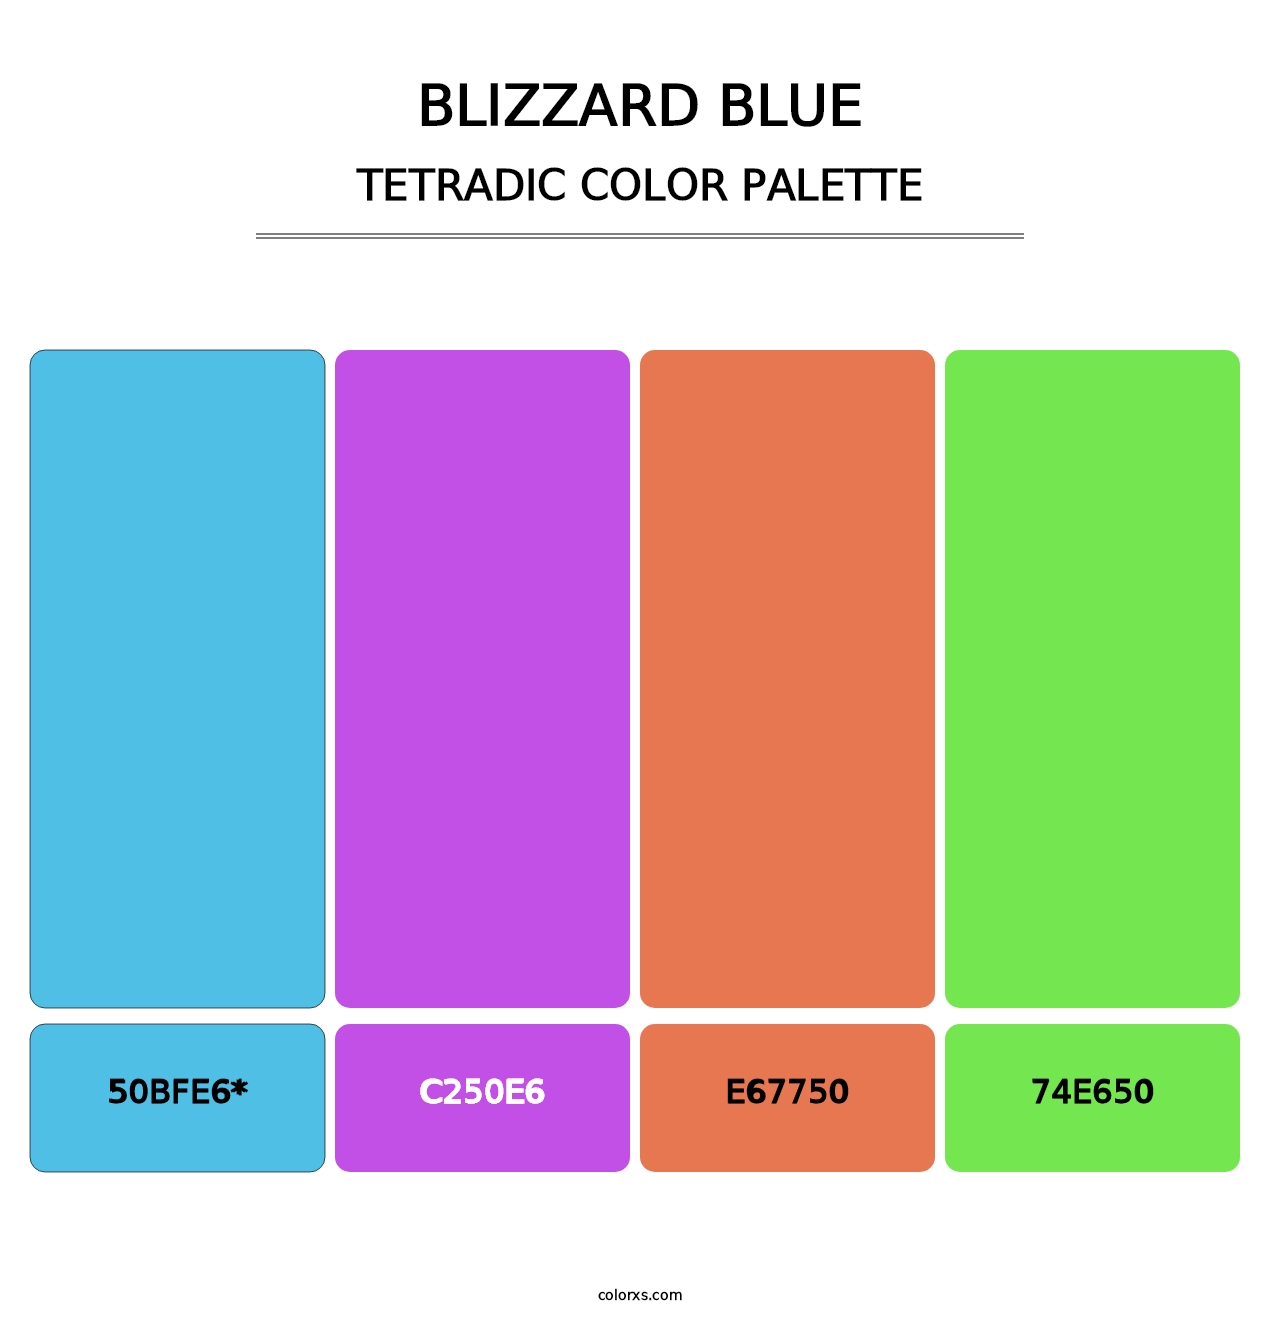 Blizzard Blue - Tetradic Color Palette